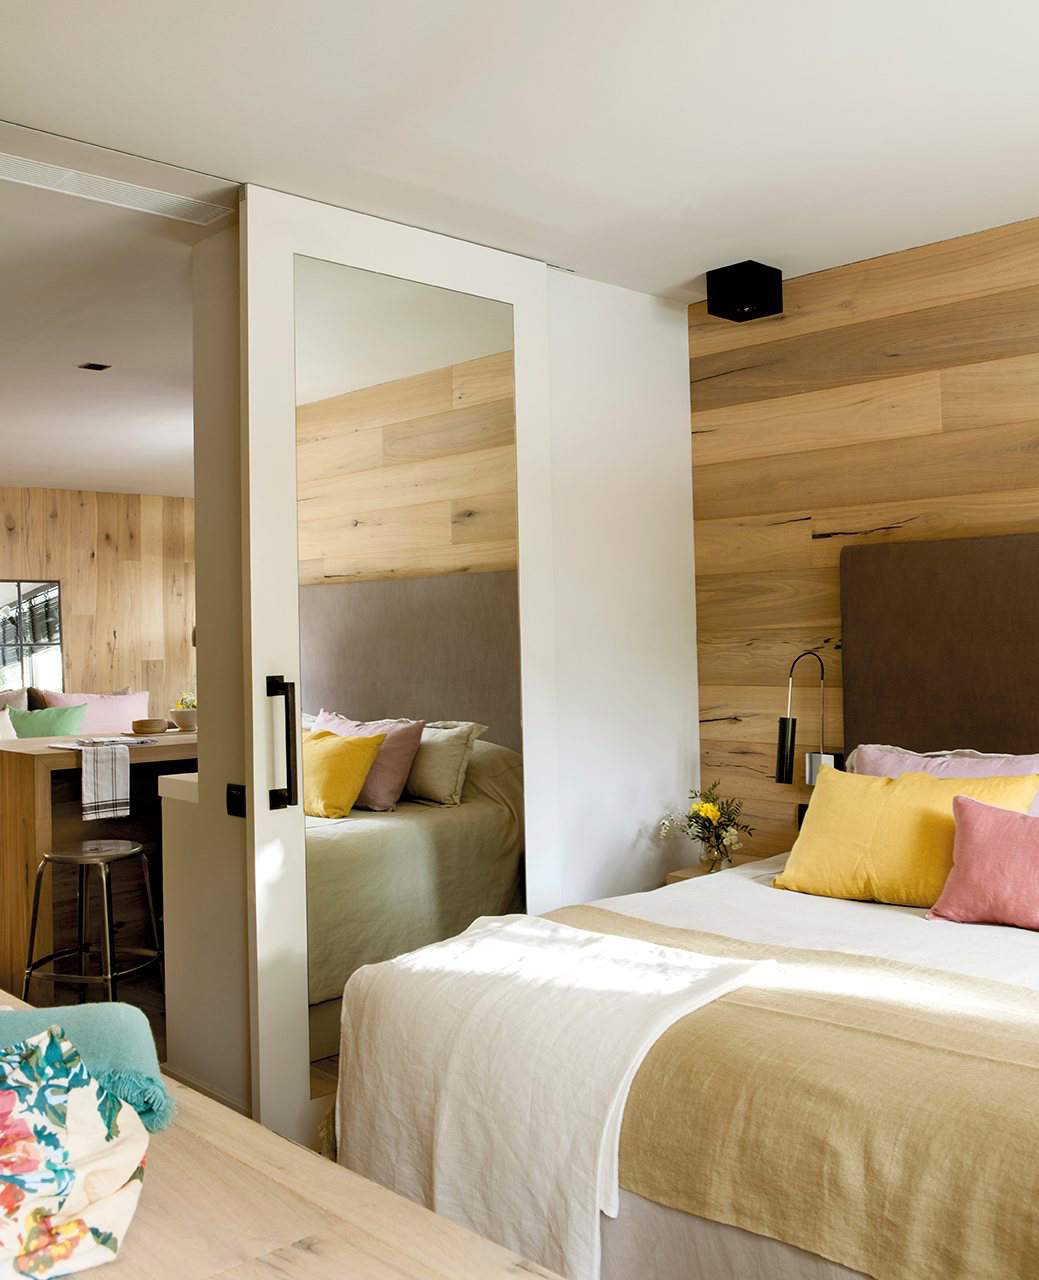 Dormitorio con pared forrada de madera y puerta corredera con espejo.